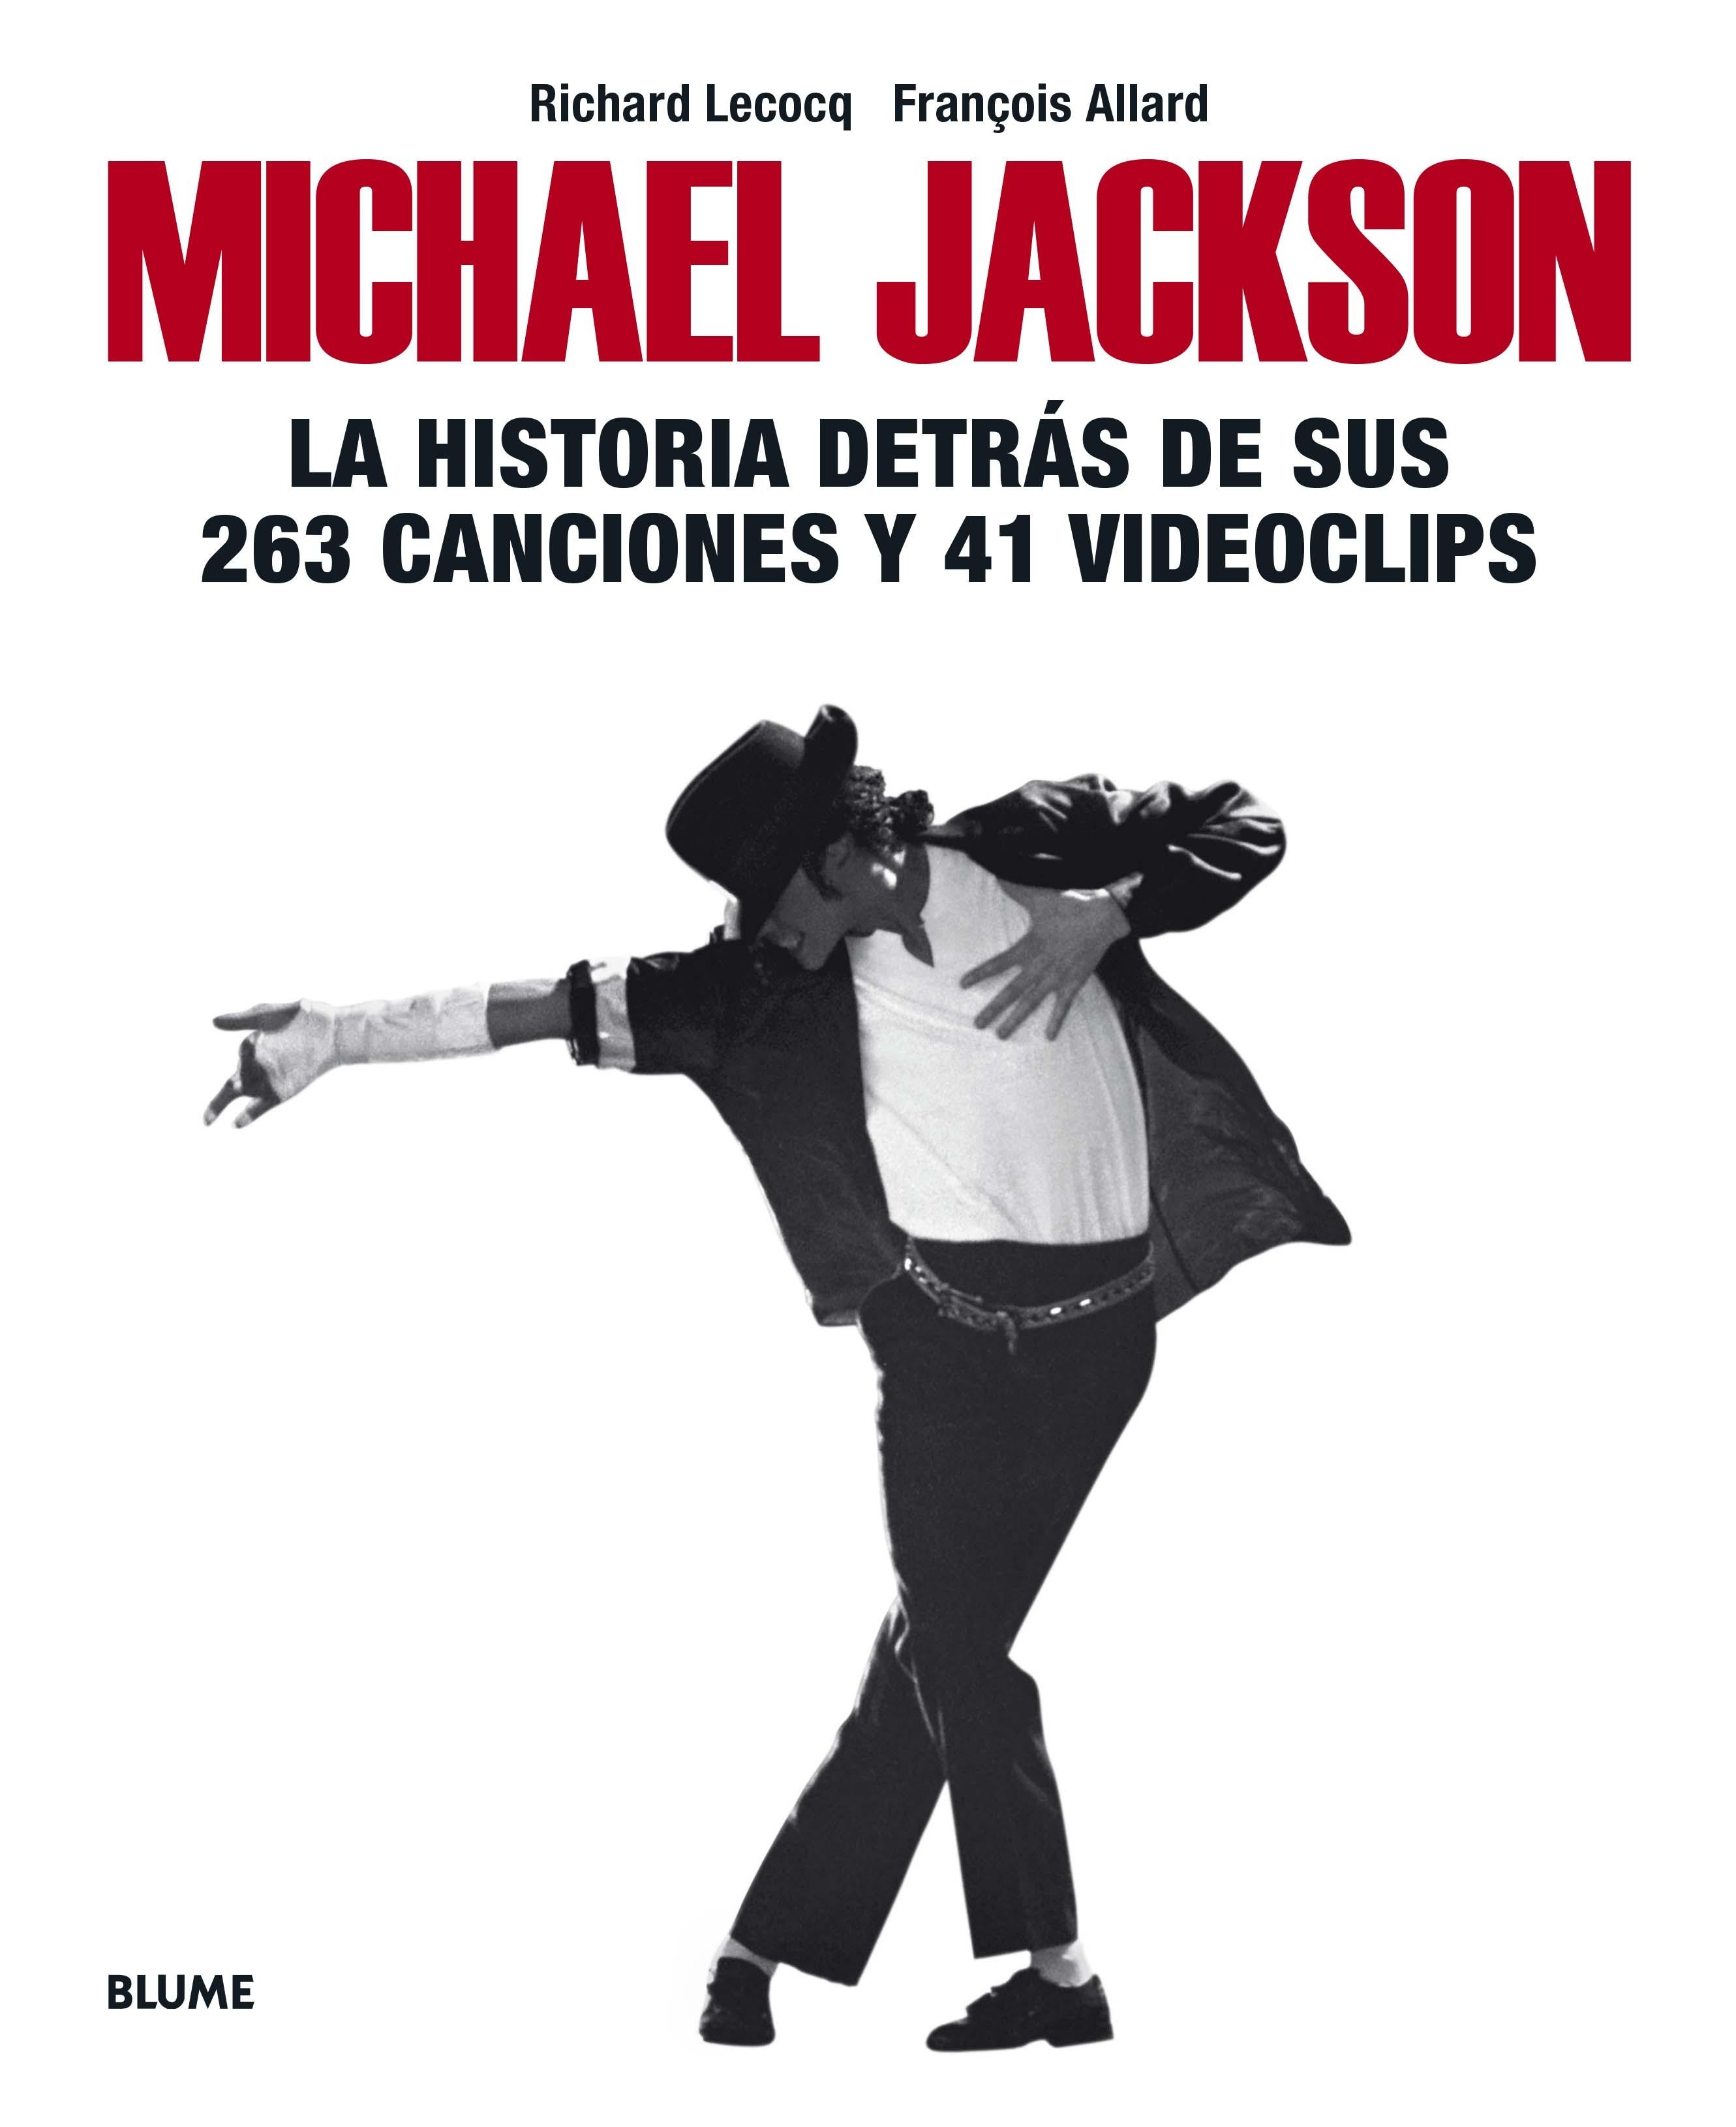 Michael Jackson "La Historia Detrás de sus 263 Canciones y 41 Videoclips"